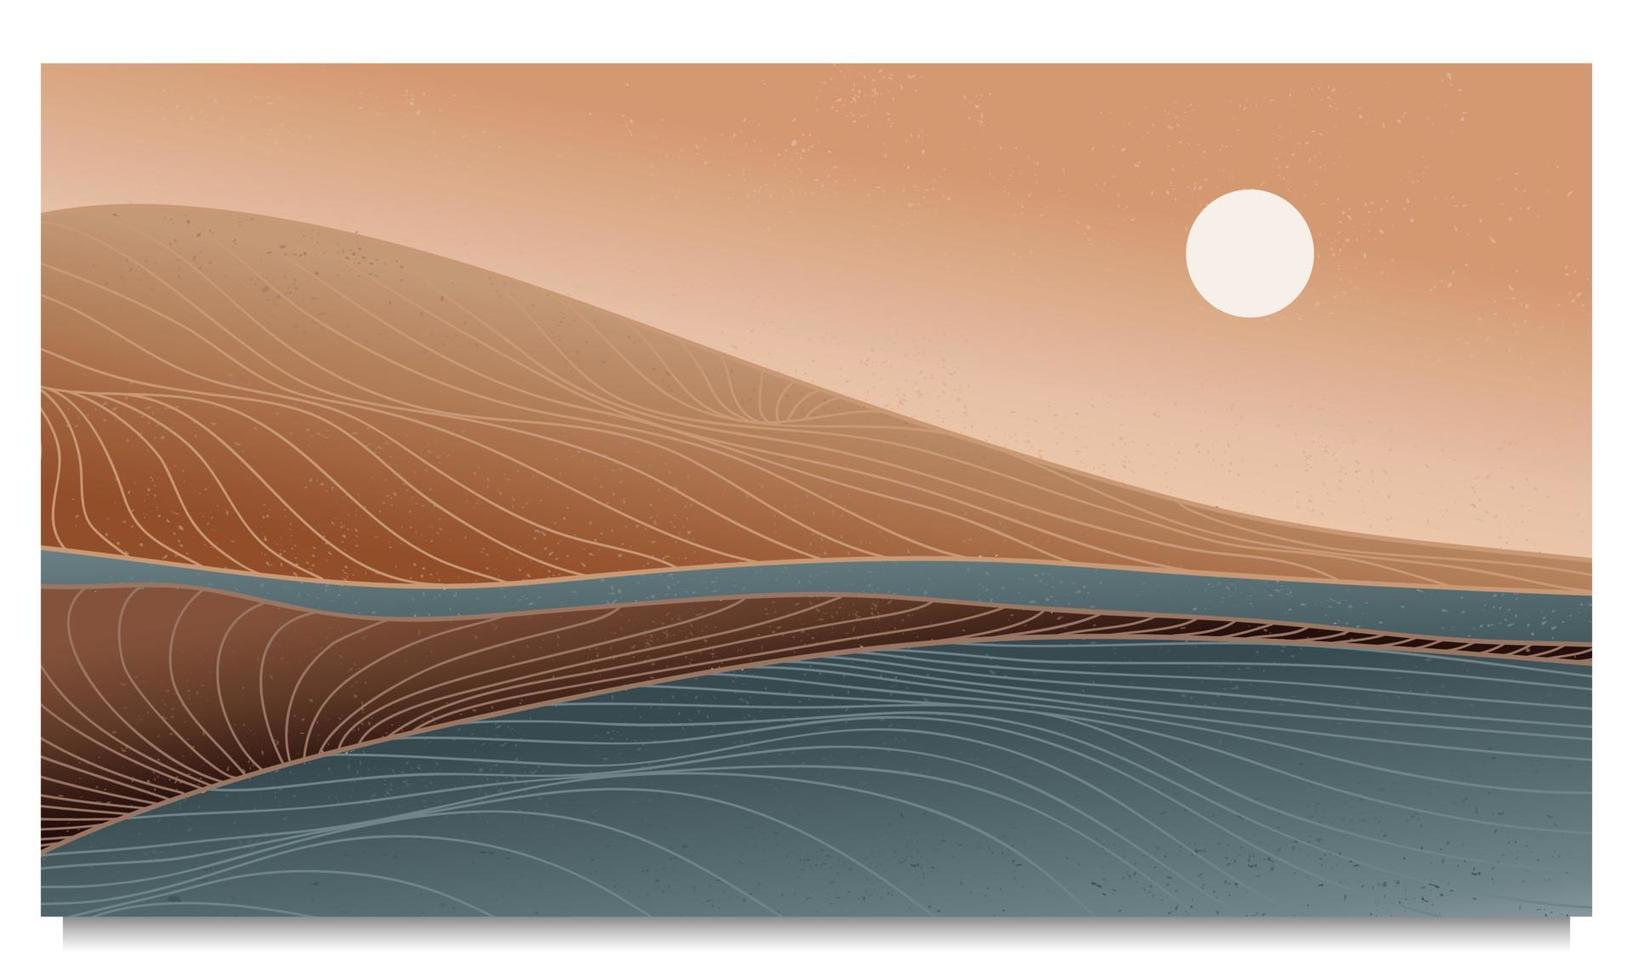 fondo de montaña y océano con patrón de onda de arte de línea. fondos estéticos contemporáneos abstractos paisajes. ilustraciones vectoriales vector